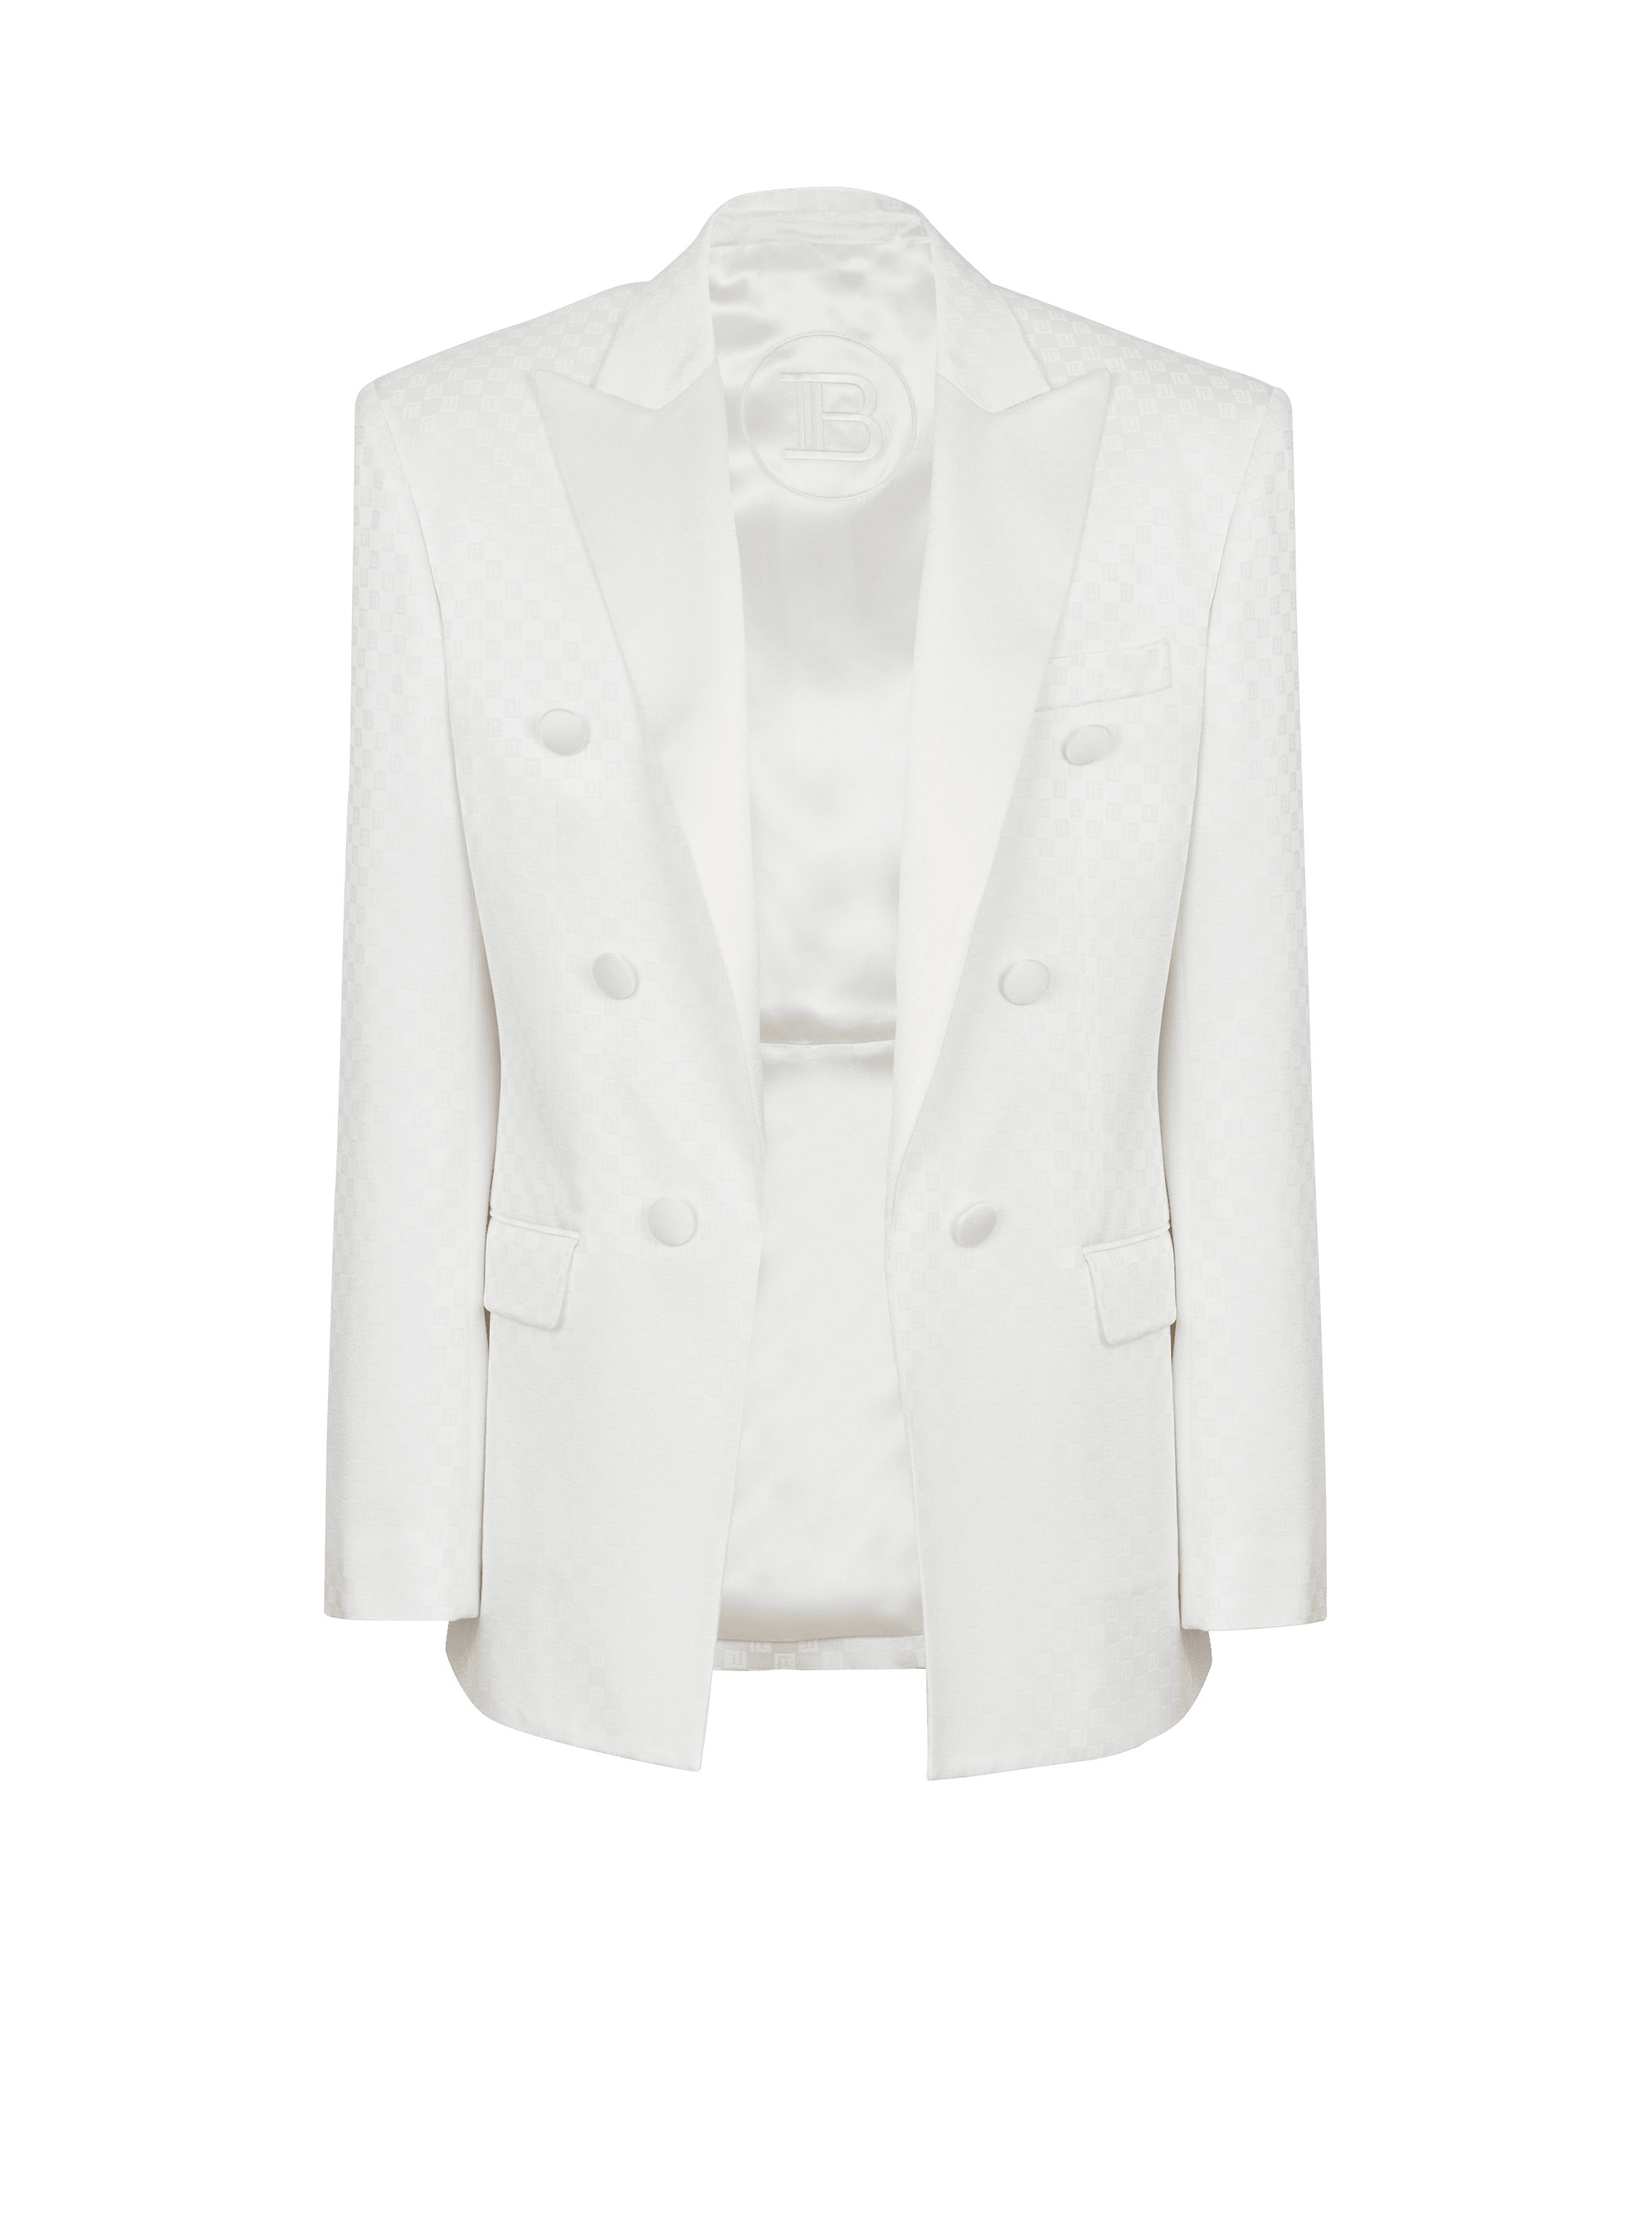 6-button monogram satin jacket, white, hi-res